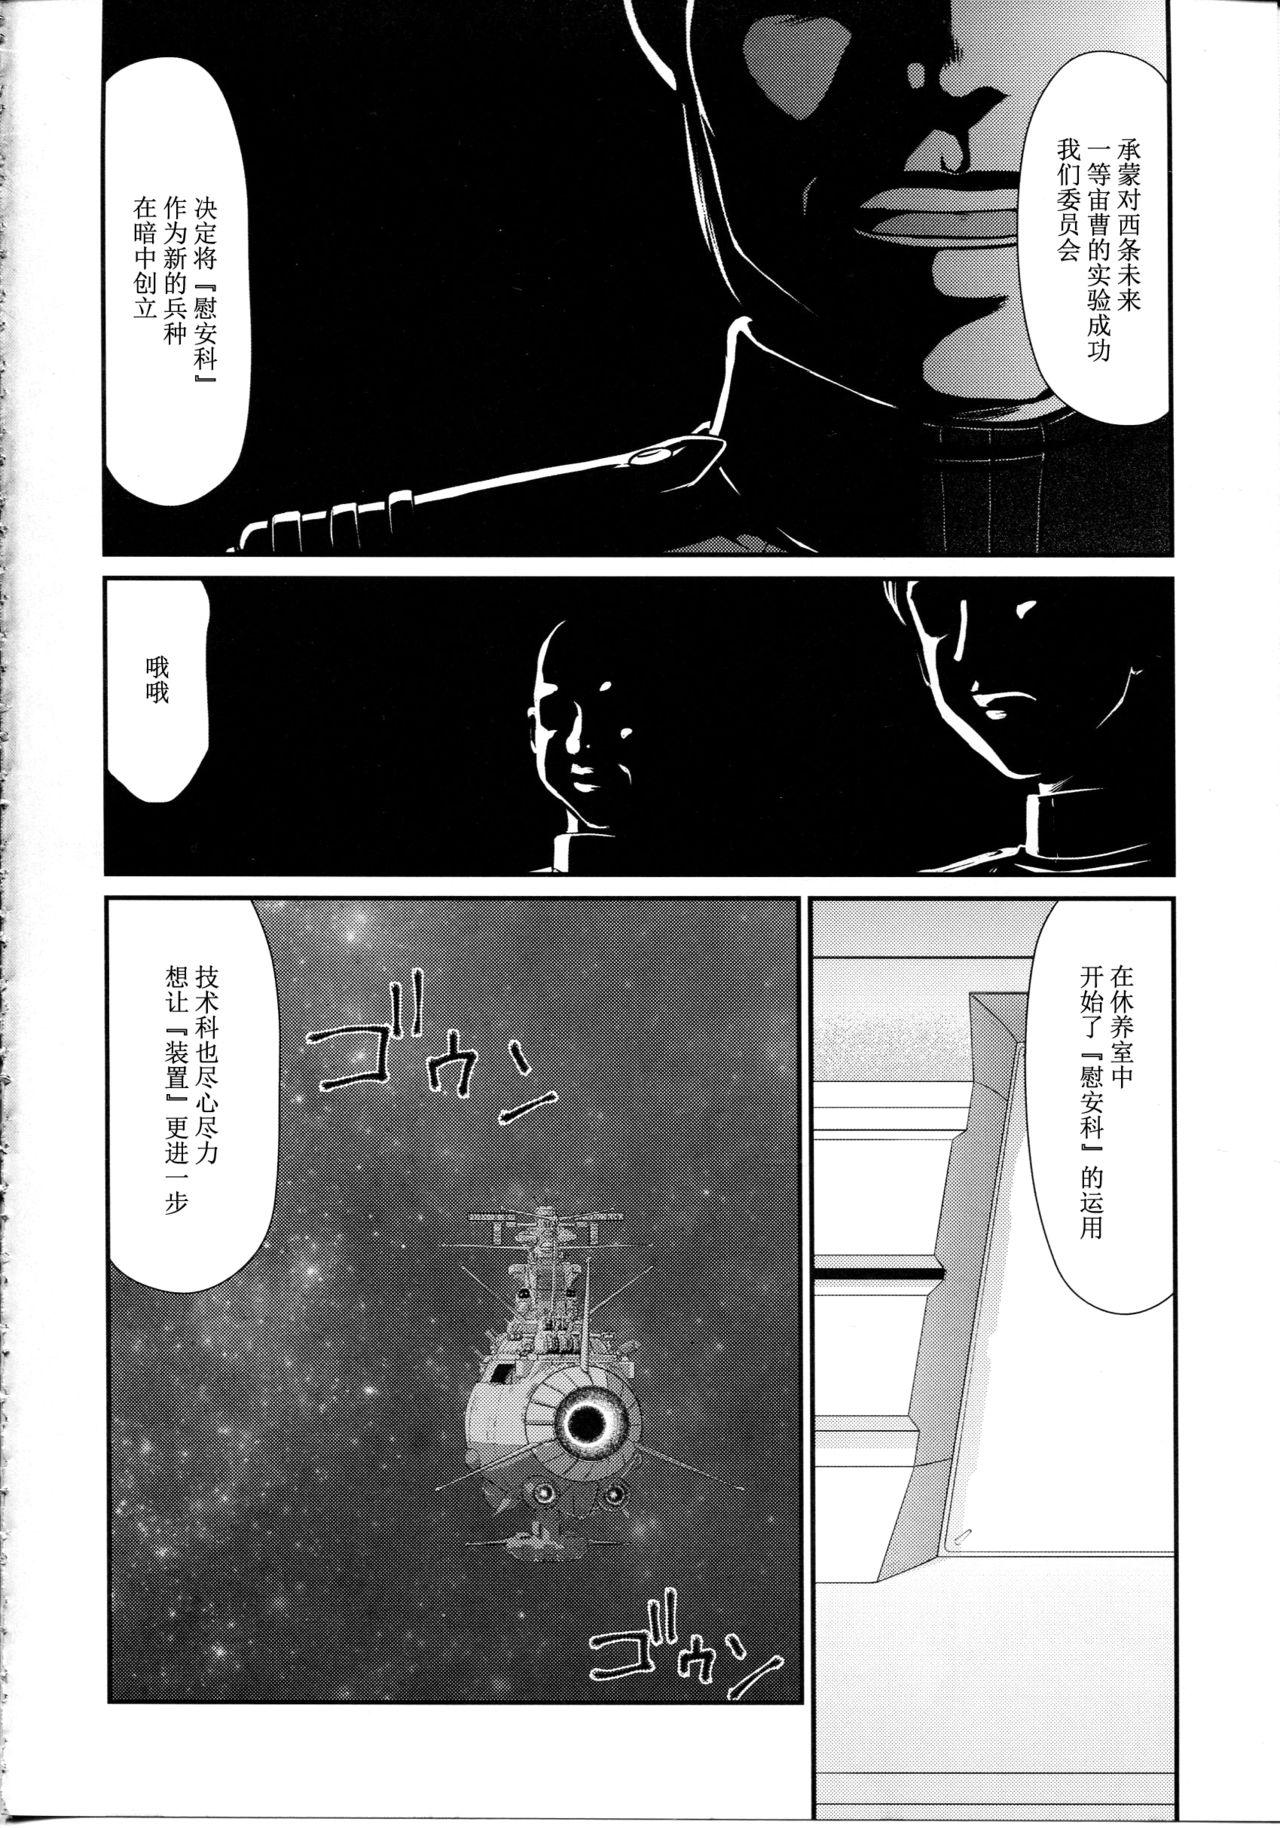 Cumswallow Yuki no Shizuku - Space battleship yamato 2199 Mojada - Page 9